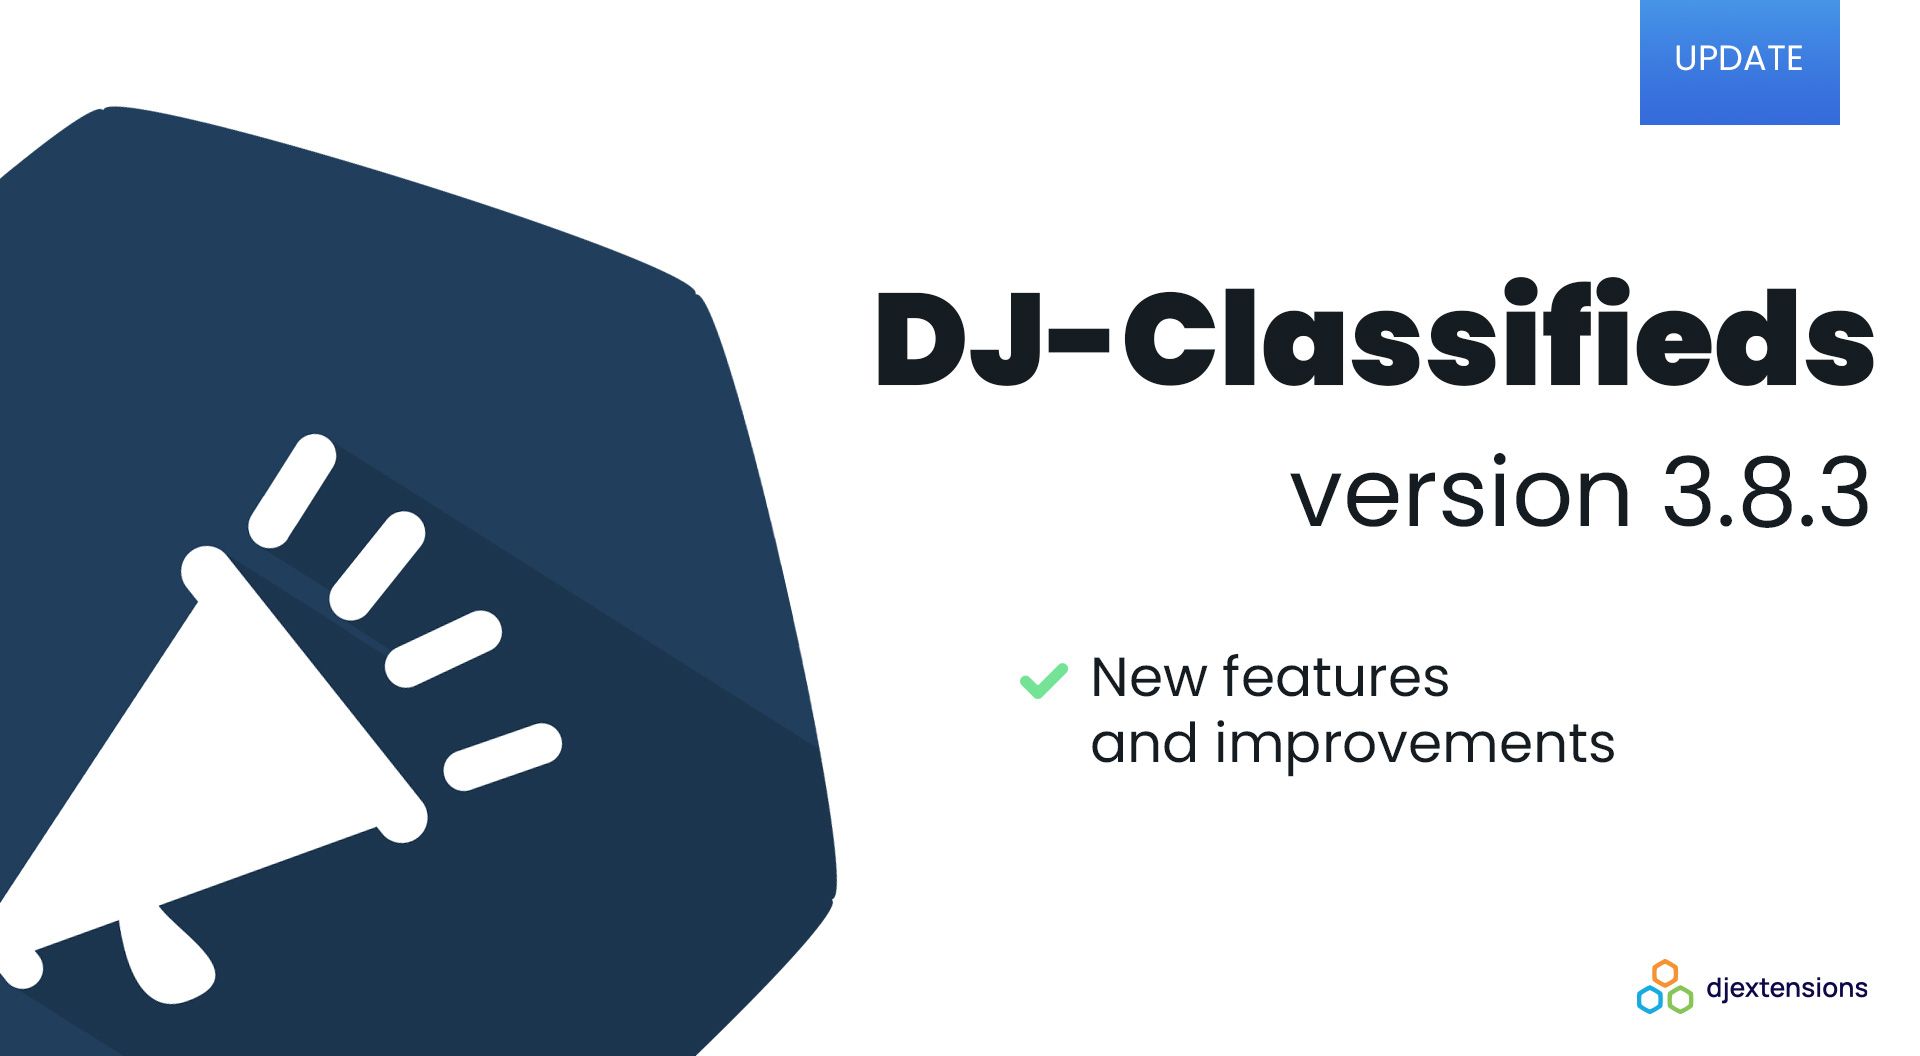 DJ-Classifieds w wersji 3.8.3 wprowadza serie usprawnień i poprawek